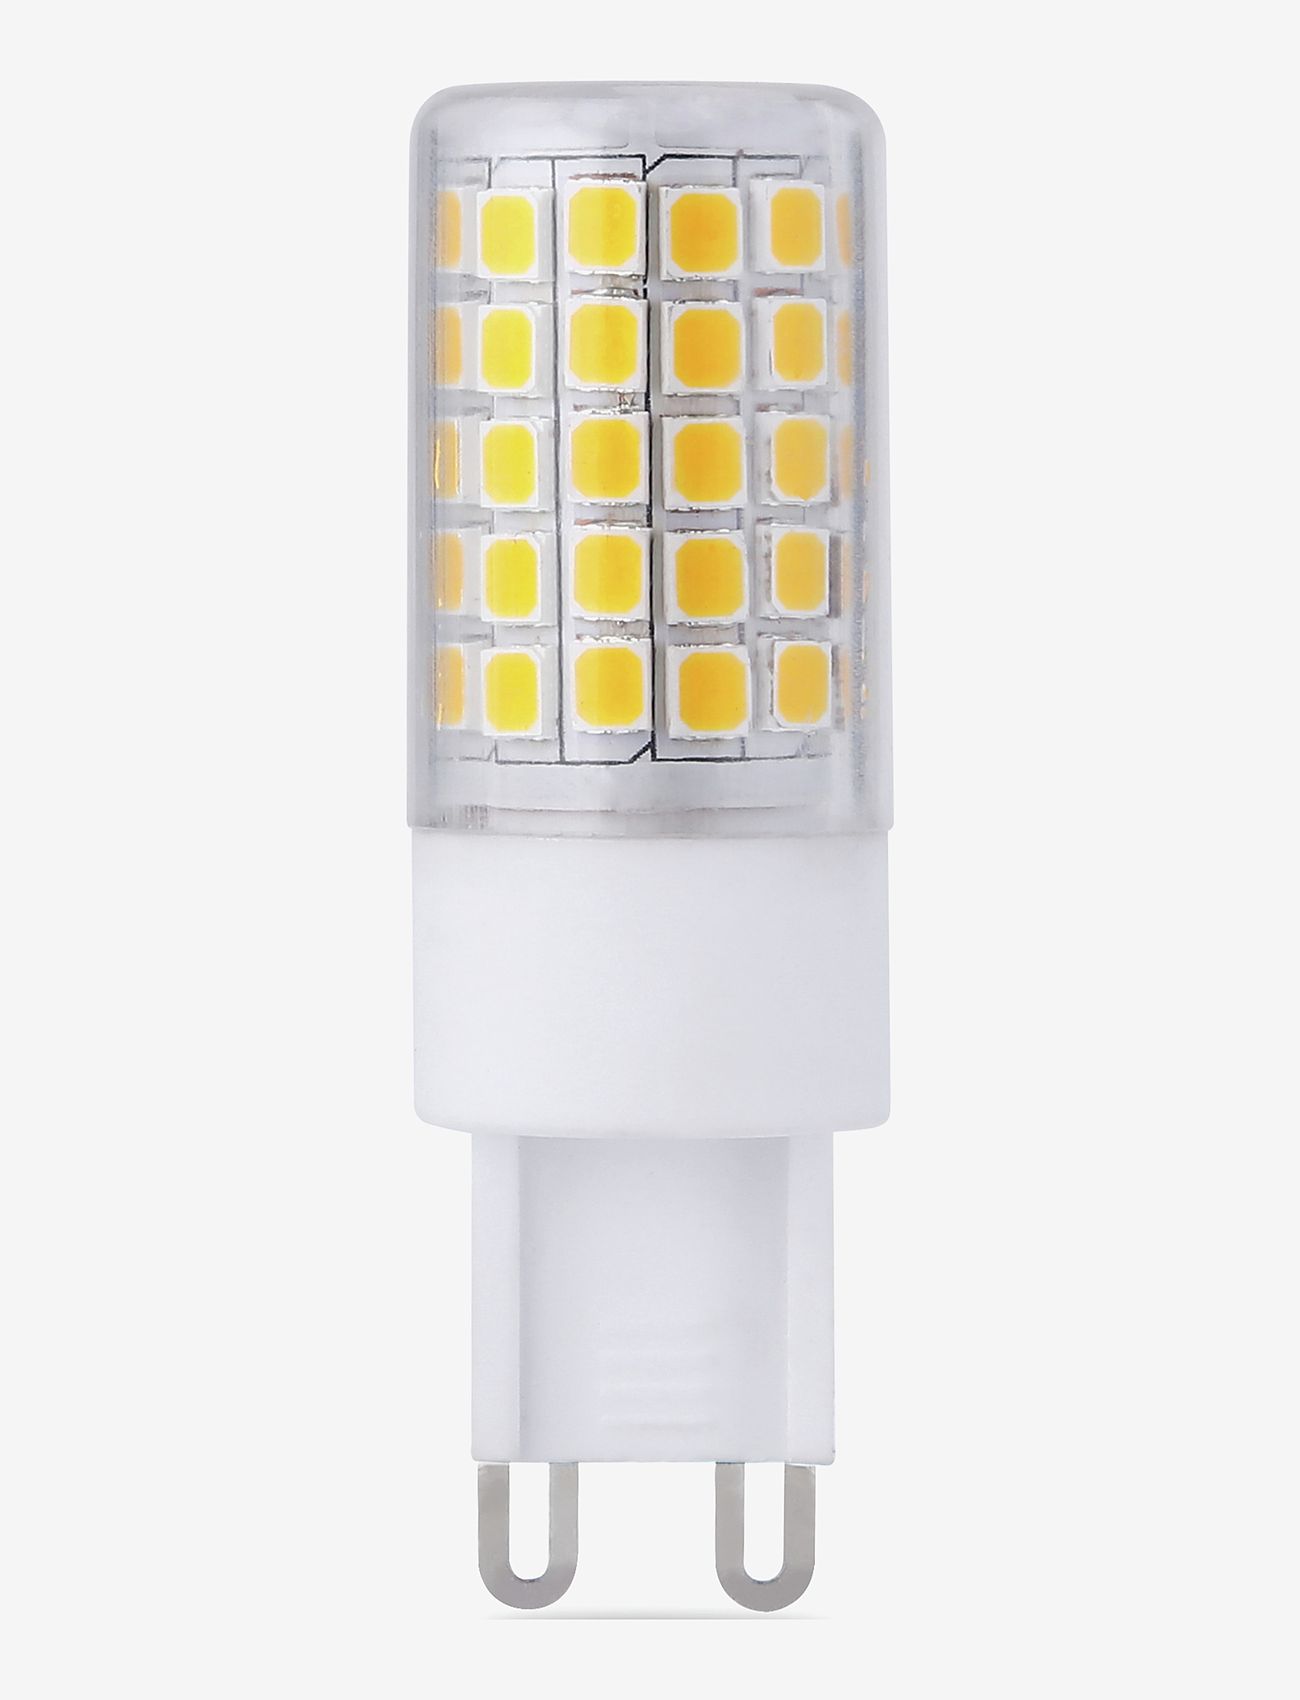 e3light - e3 LED G9 927 550lm Dimmable - die niedrigsten preise - clear - 0